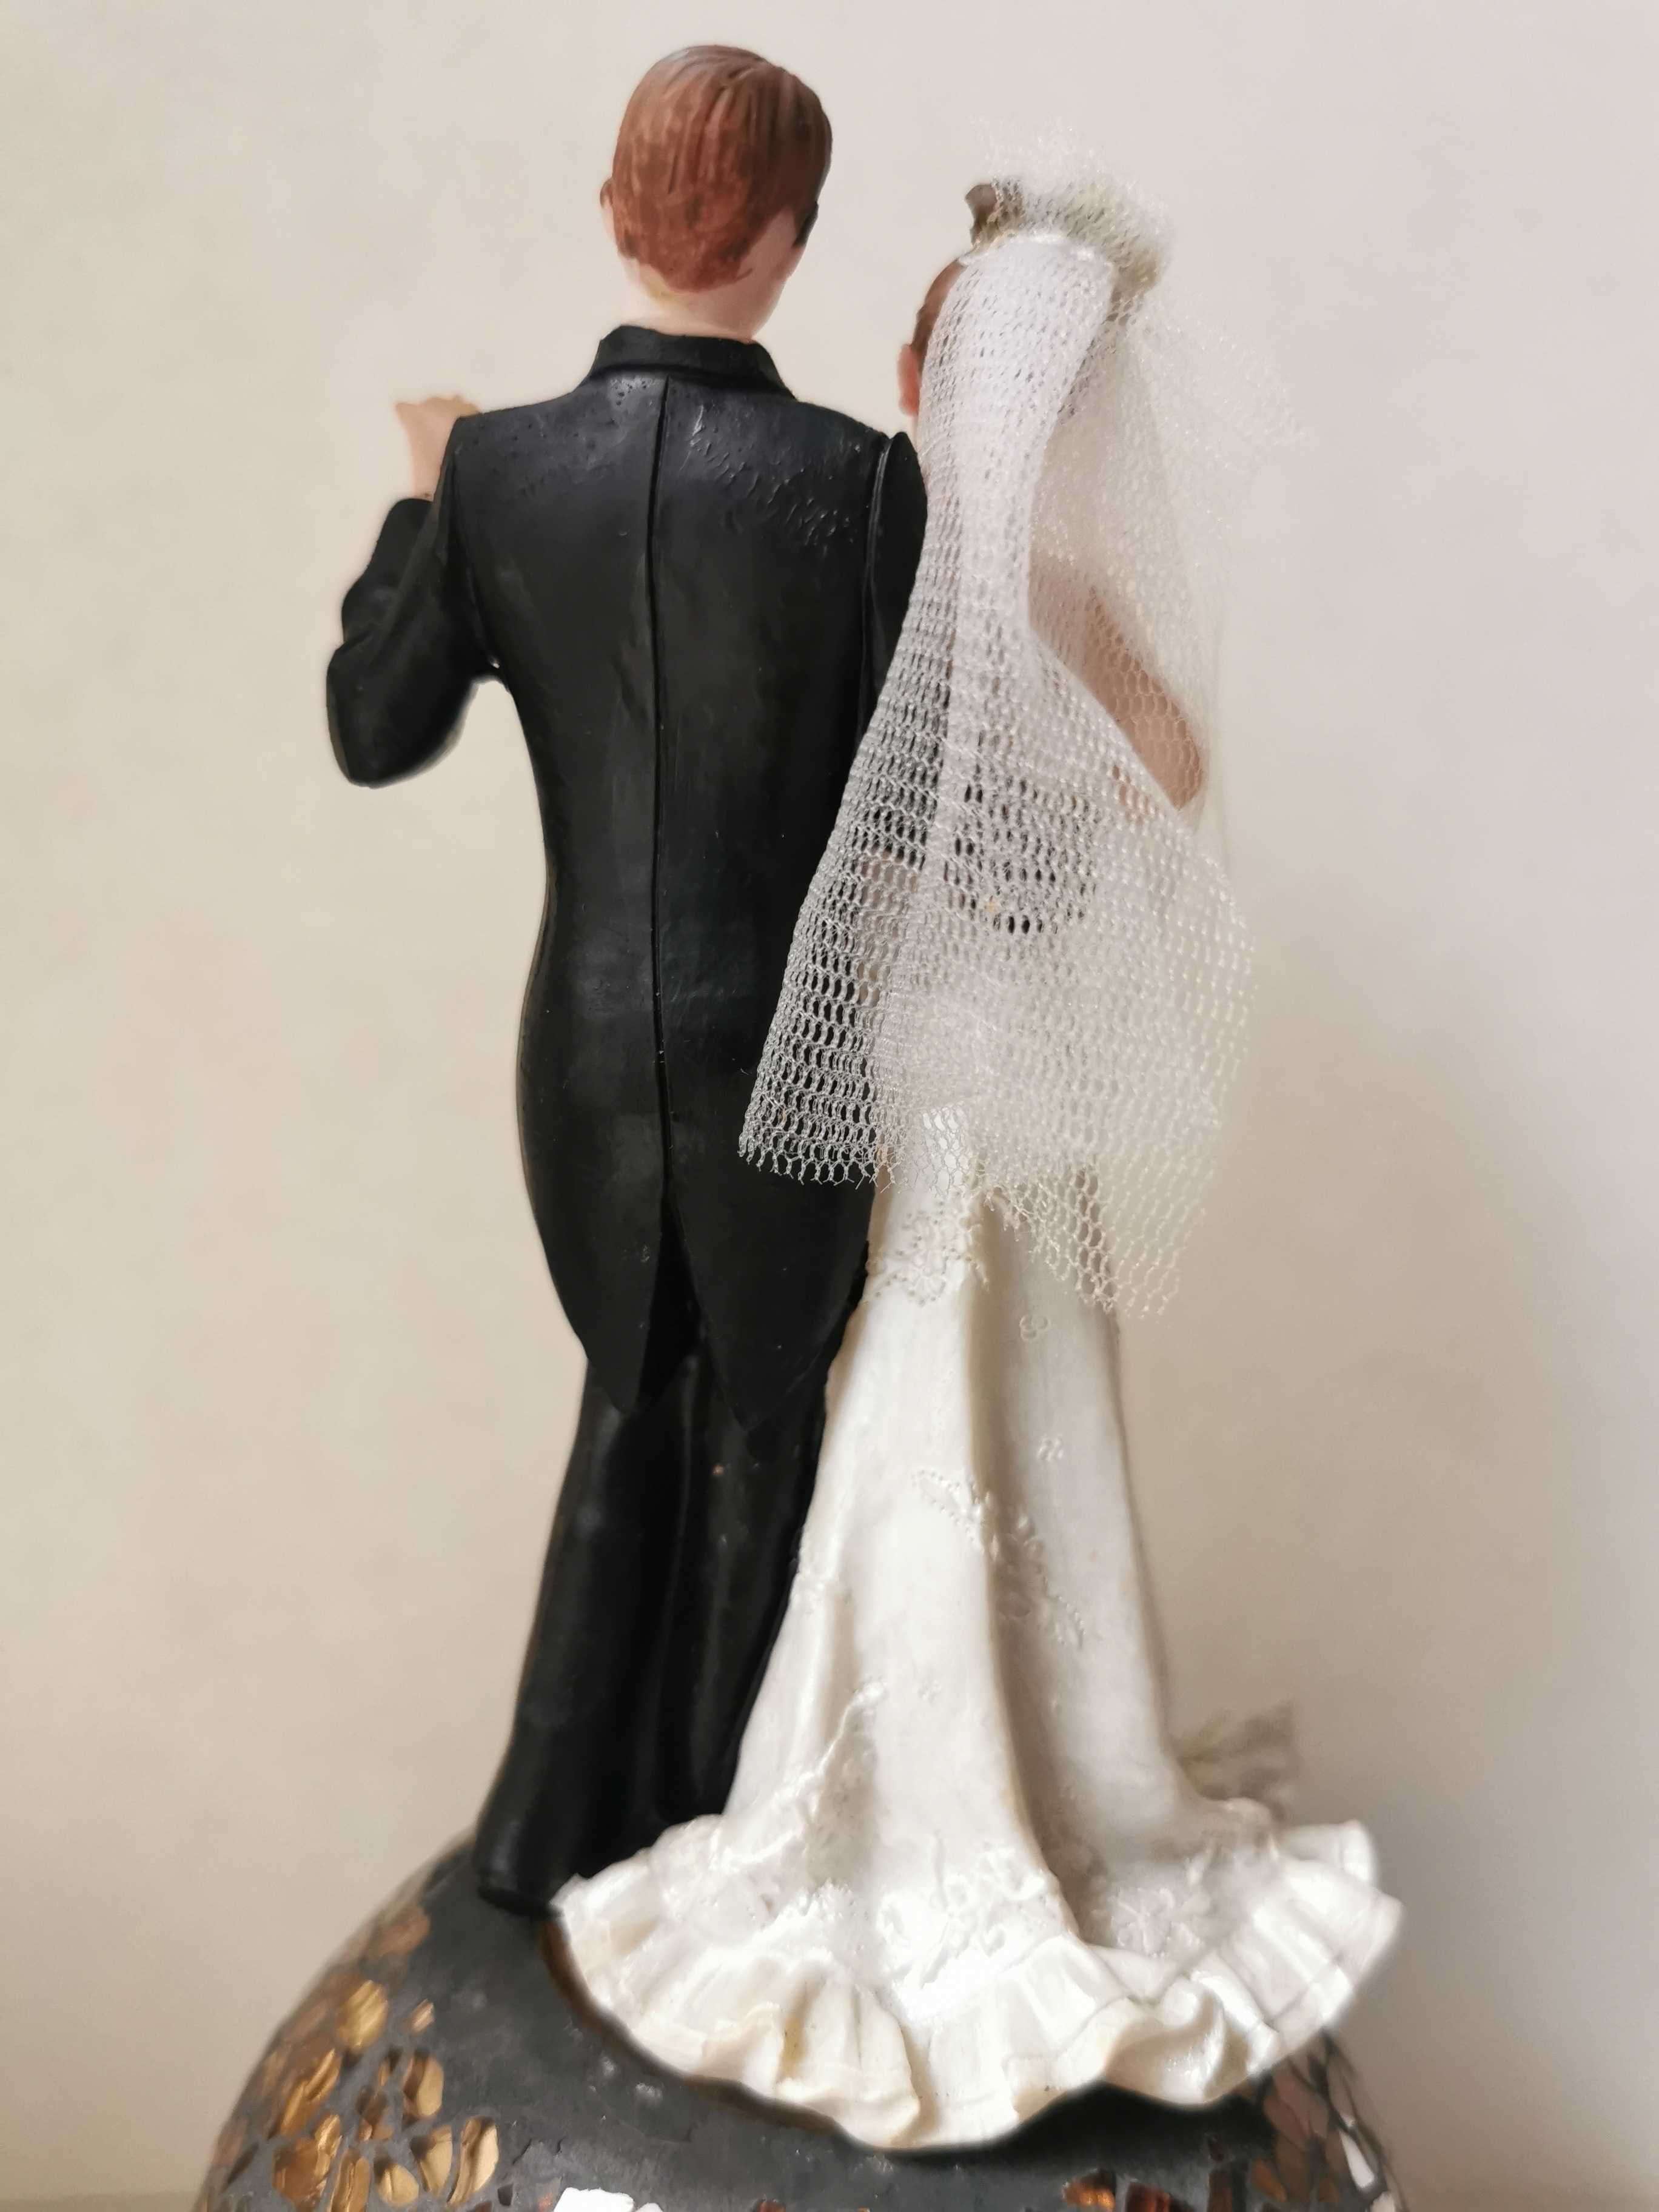 Статуэтка на торт, фигурка Жених и Невеста, Влюбленная пара